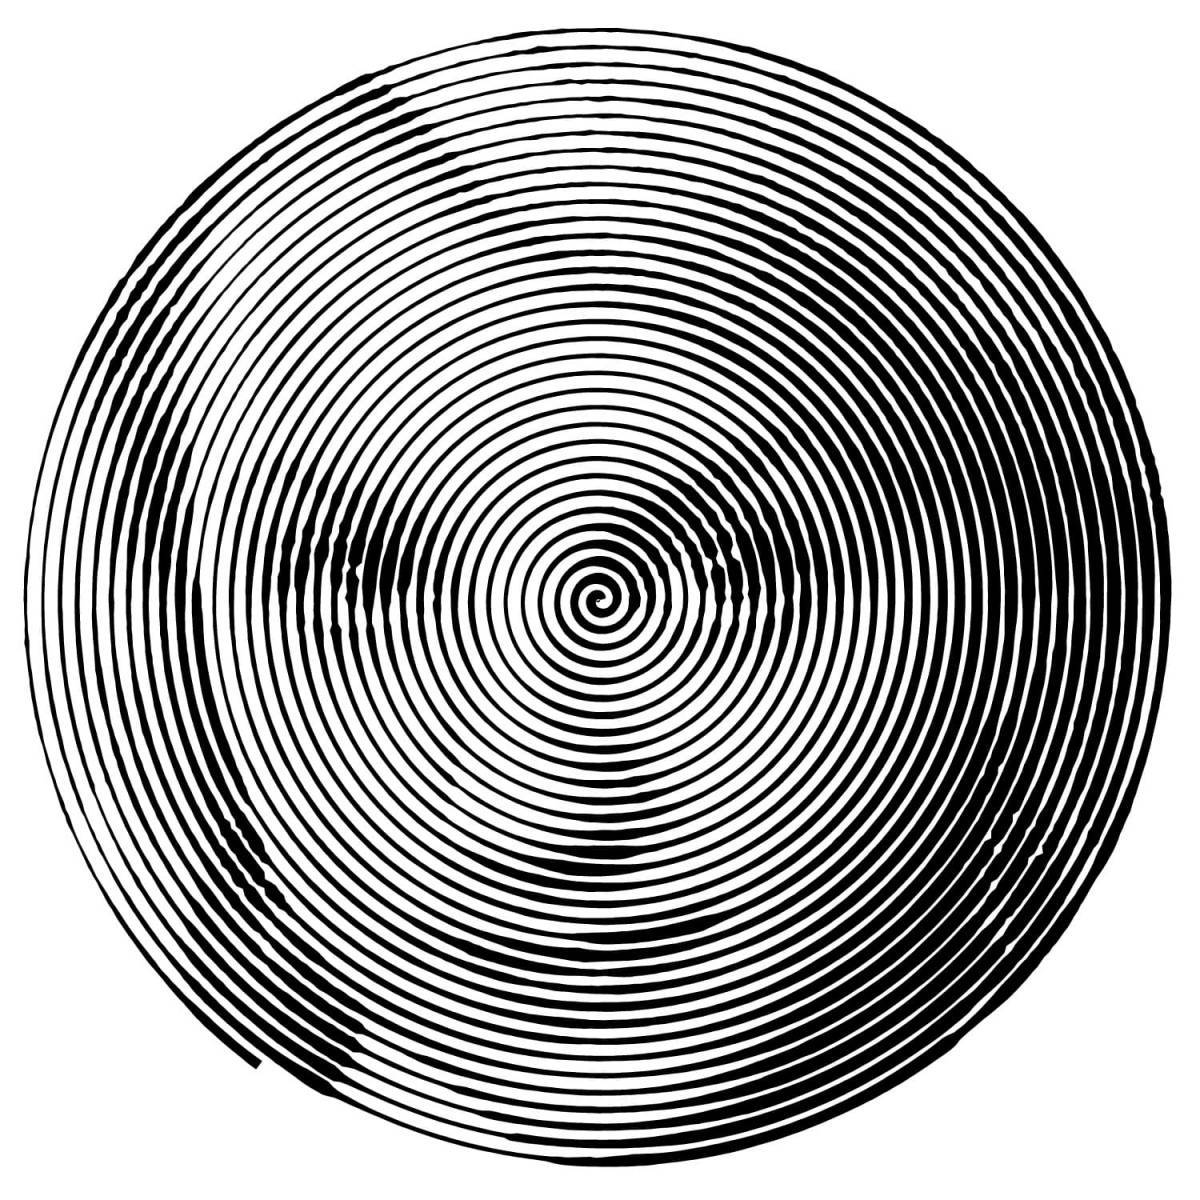 Spiral pattern #5